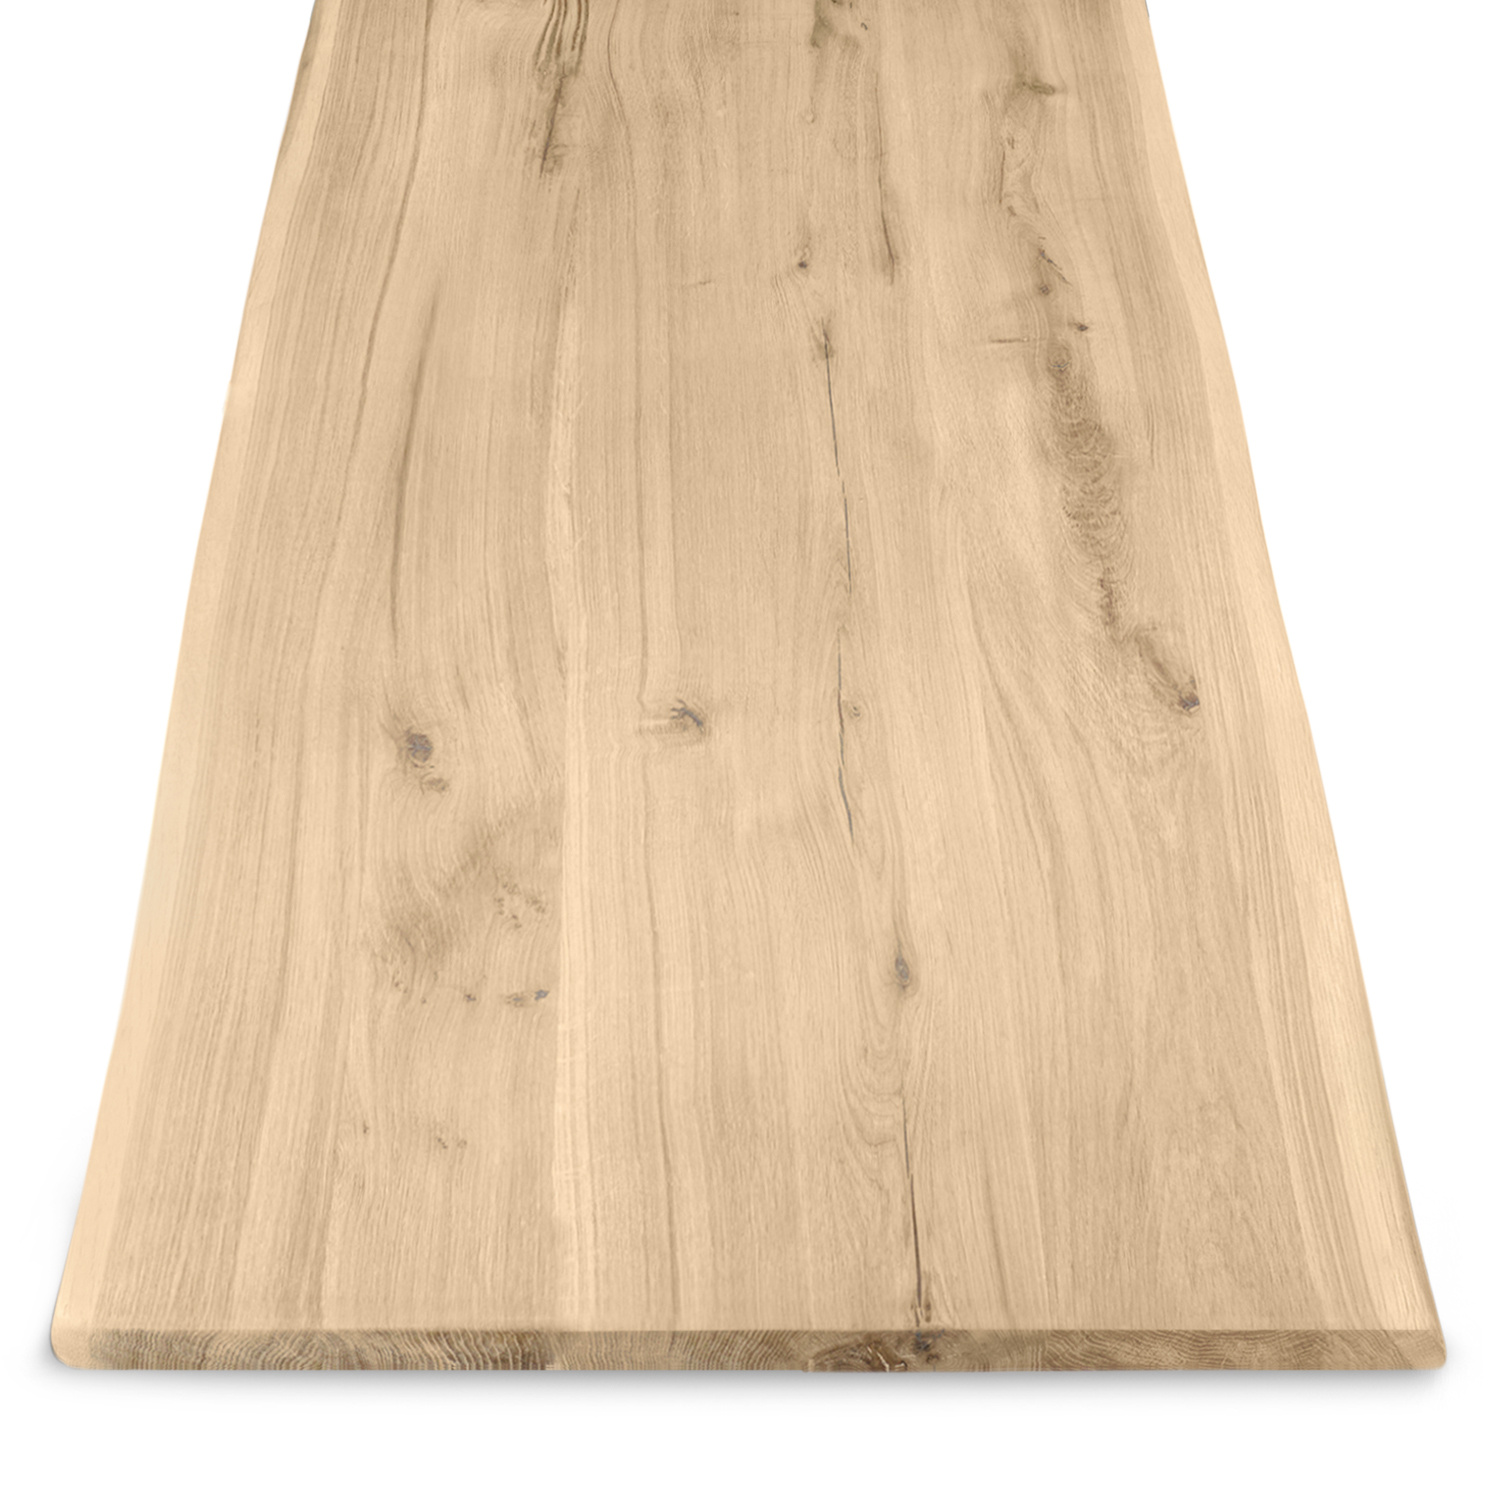  Eiken boomstam tafelblad - 3 cm dik (1-laag) - Diverse afmetingen - met boomstam rand / waankant - extra rustiek Europees eikenhout - met extra brede lamellen (circa 14-20 cm) - verlijmd kd 8-12%